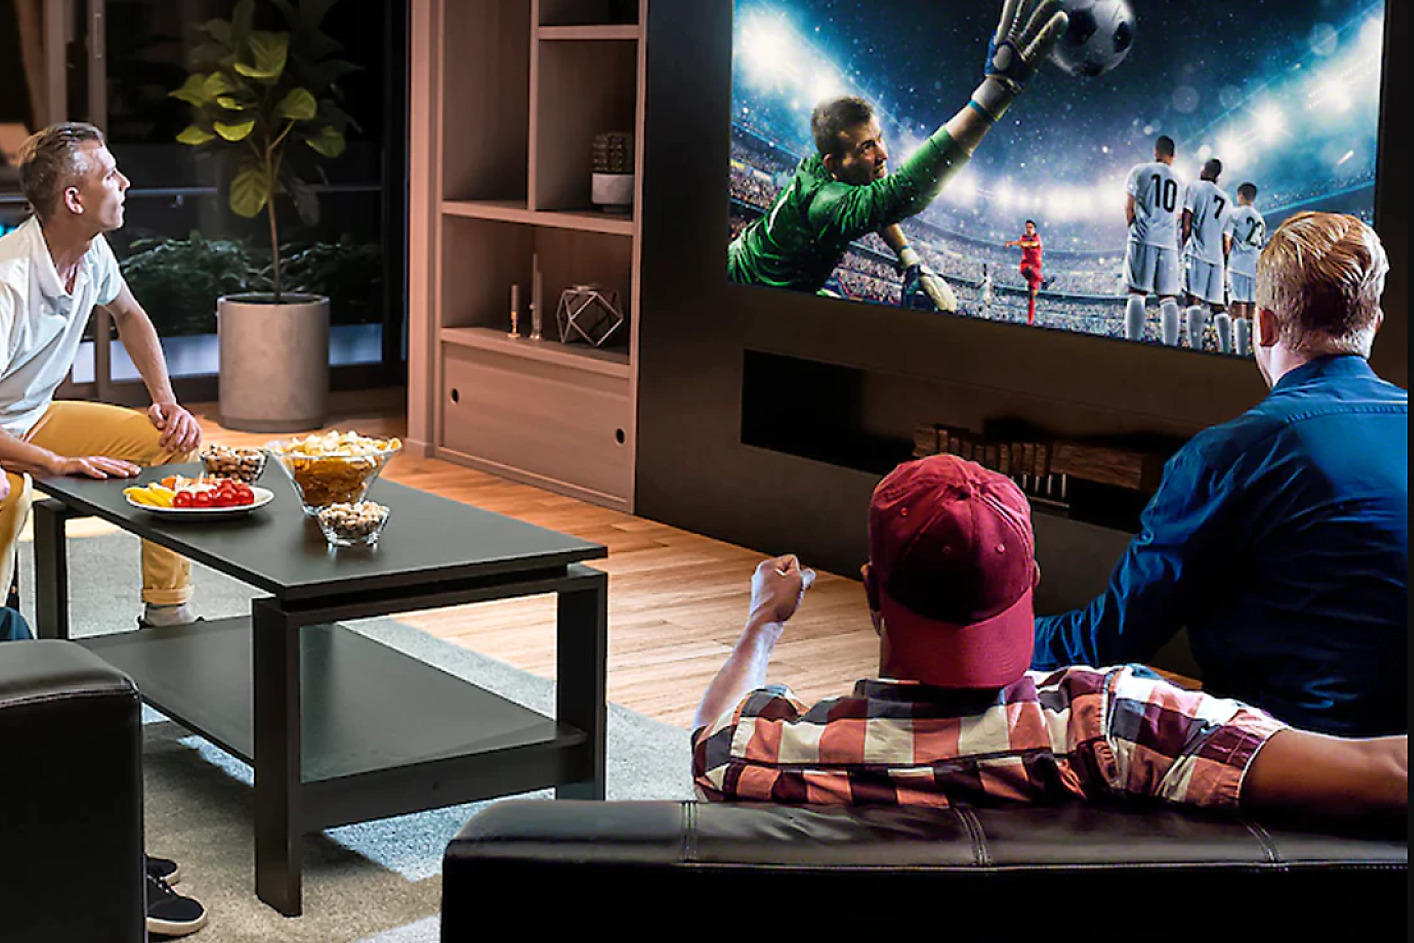 ثلاثة أشخاص في غرفة معيشة يشاهدون جهاز تلفزيون يعرض حارس مرمى يقفز لالتقاط كرة قدم.